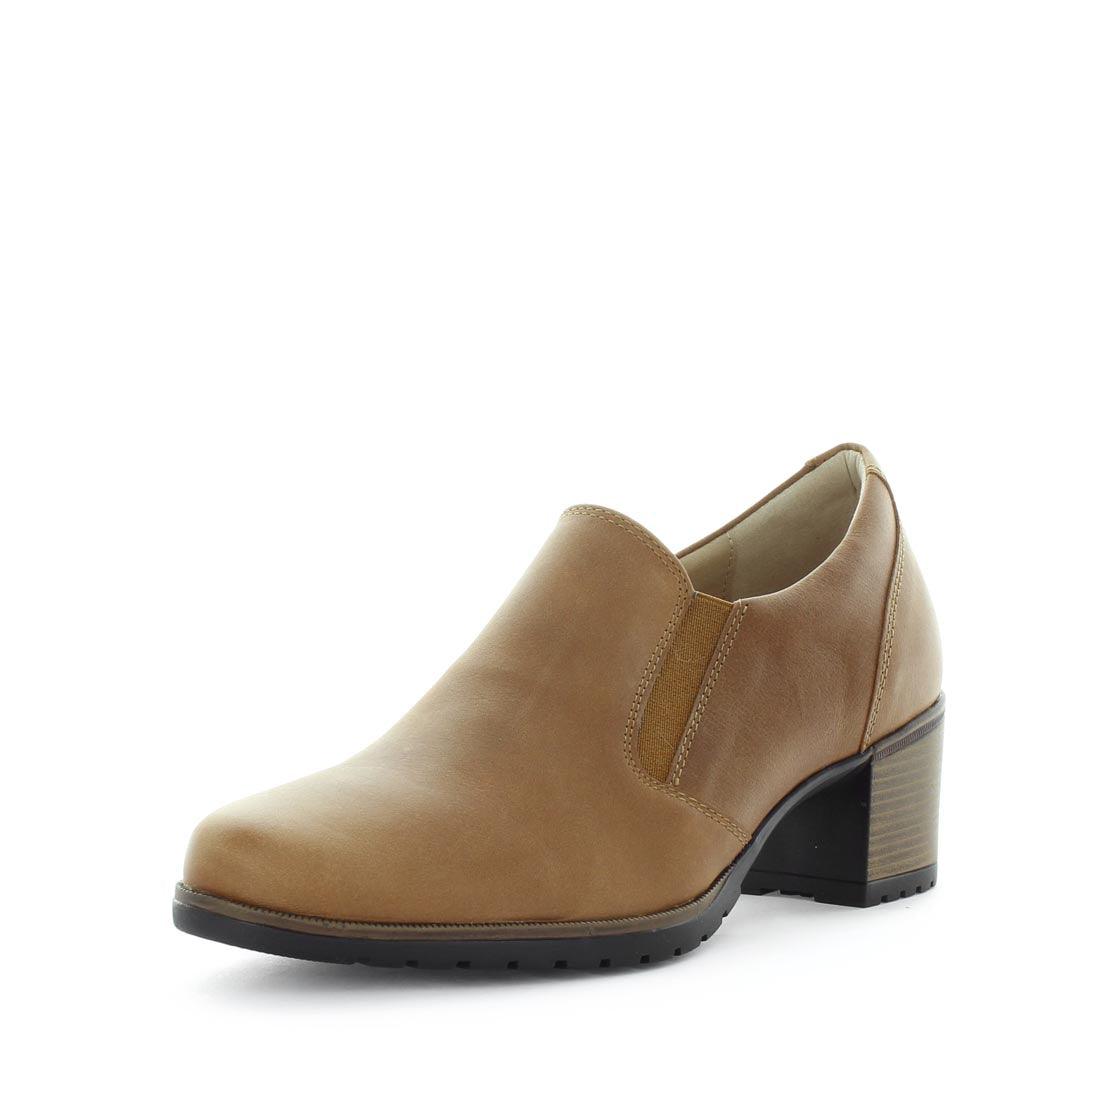 KLEO by KIARFLEX - iShoes - Sale, Sale: Women's Sale, Women's Shoes, Women's Shoes: European - FOOTWEAR-FOOTWEAR